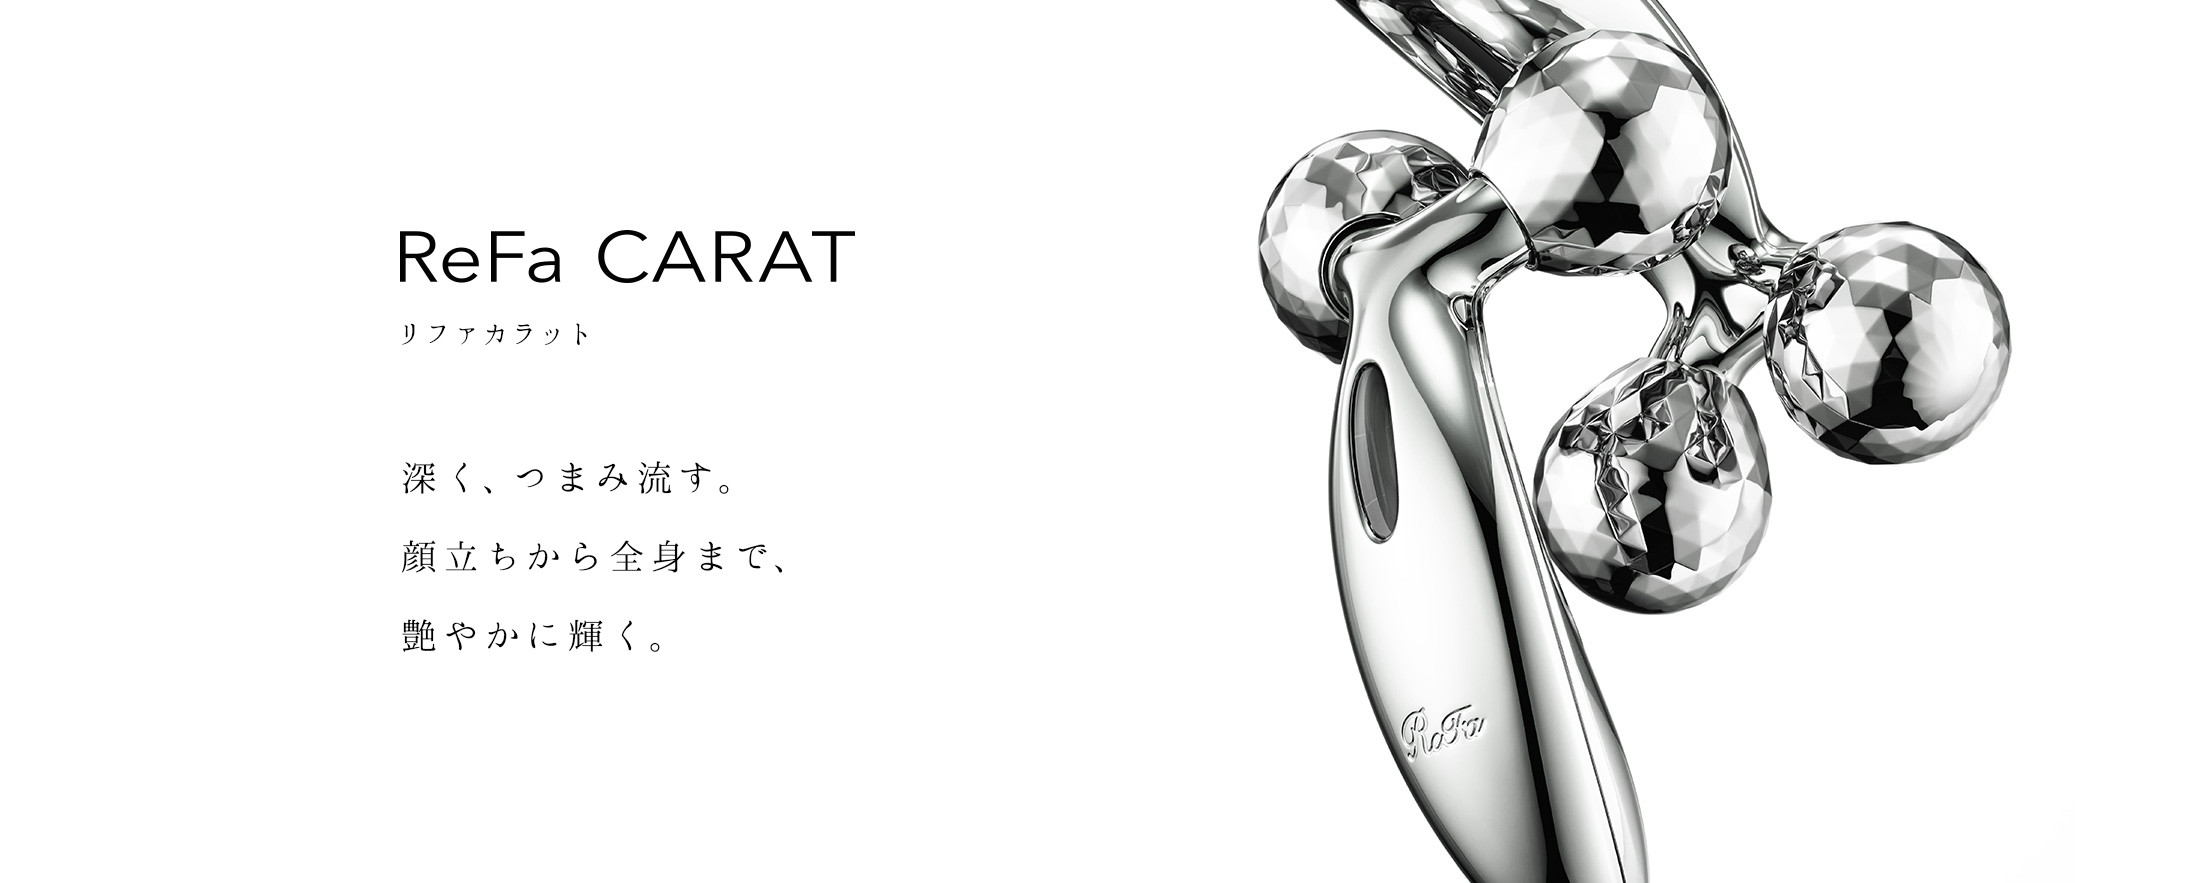 リファカラット - ReFa CARAT | 商品情報 | ReFa（リファ）公式ブランドサイト